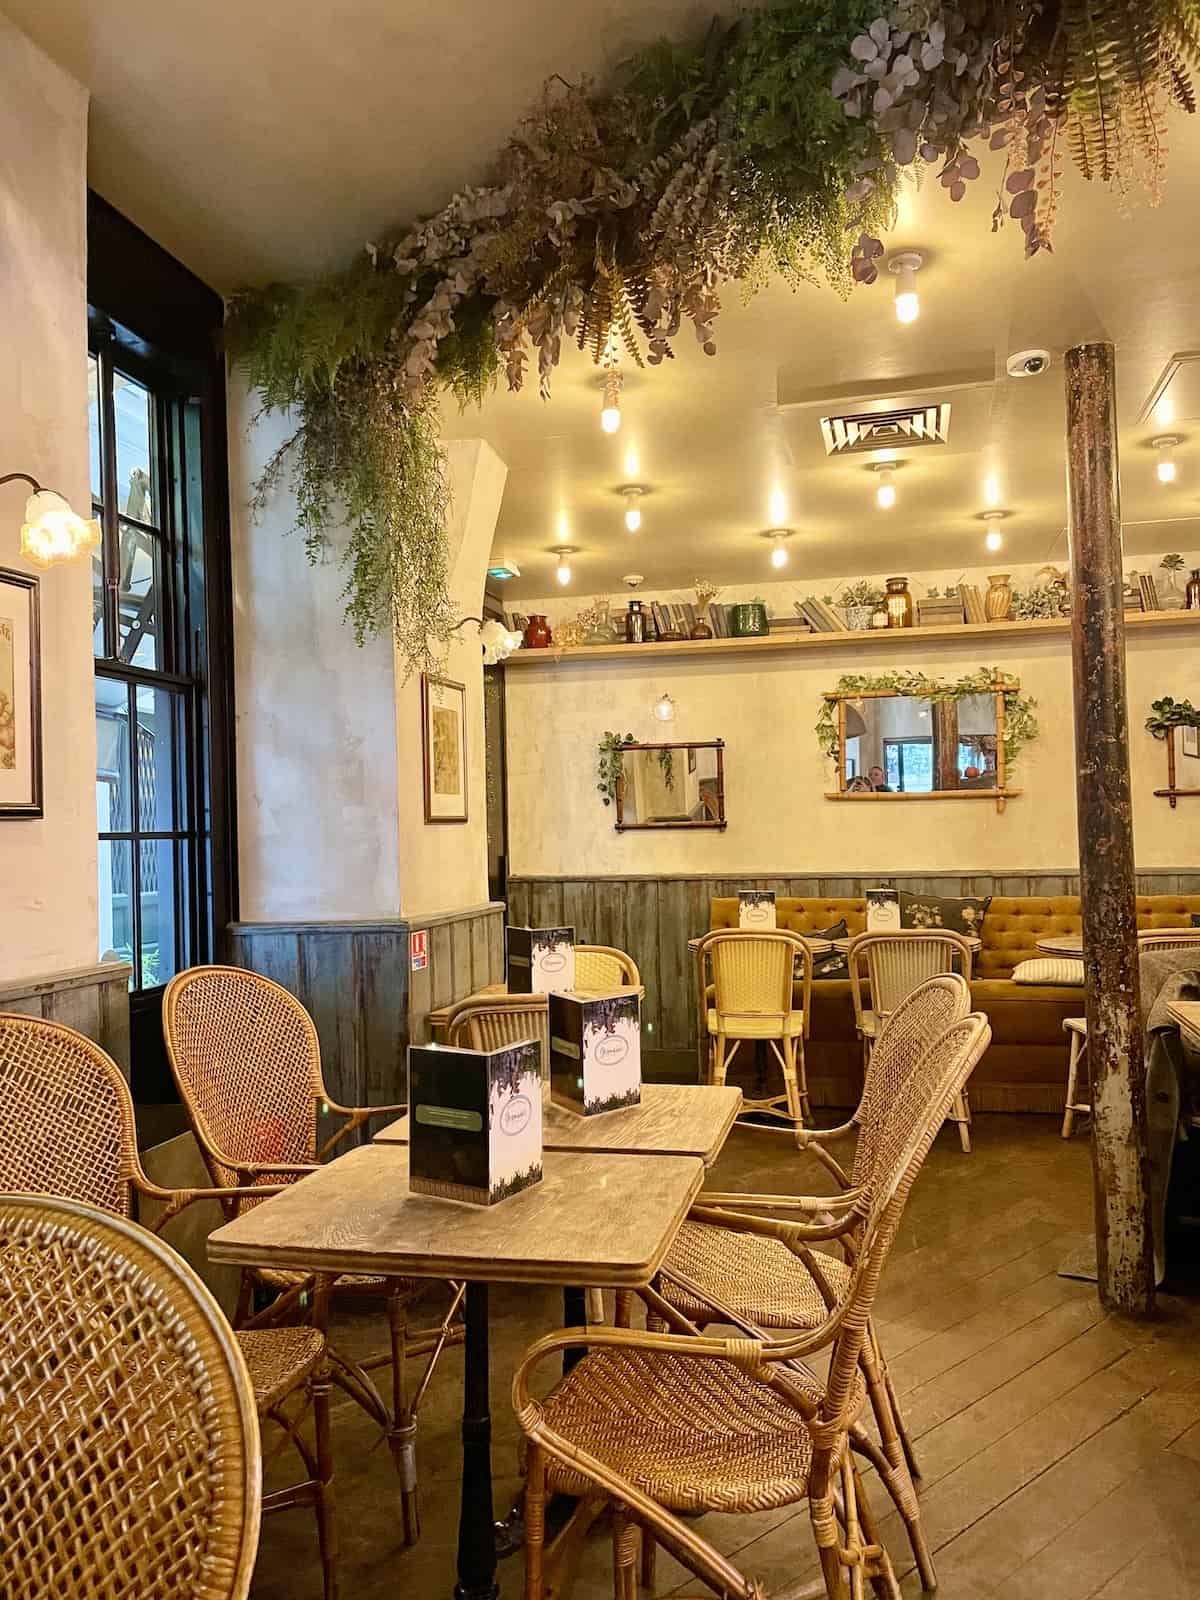 Cafe in Paris.